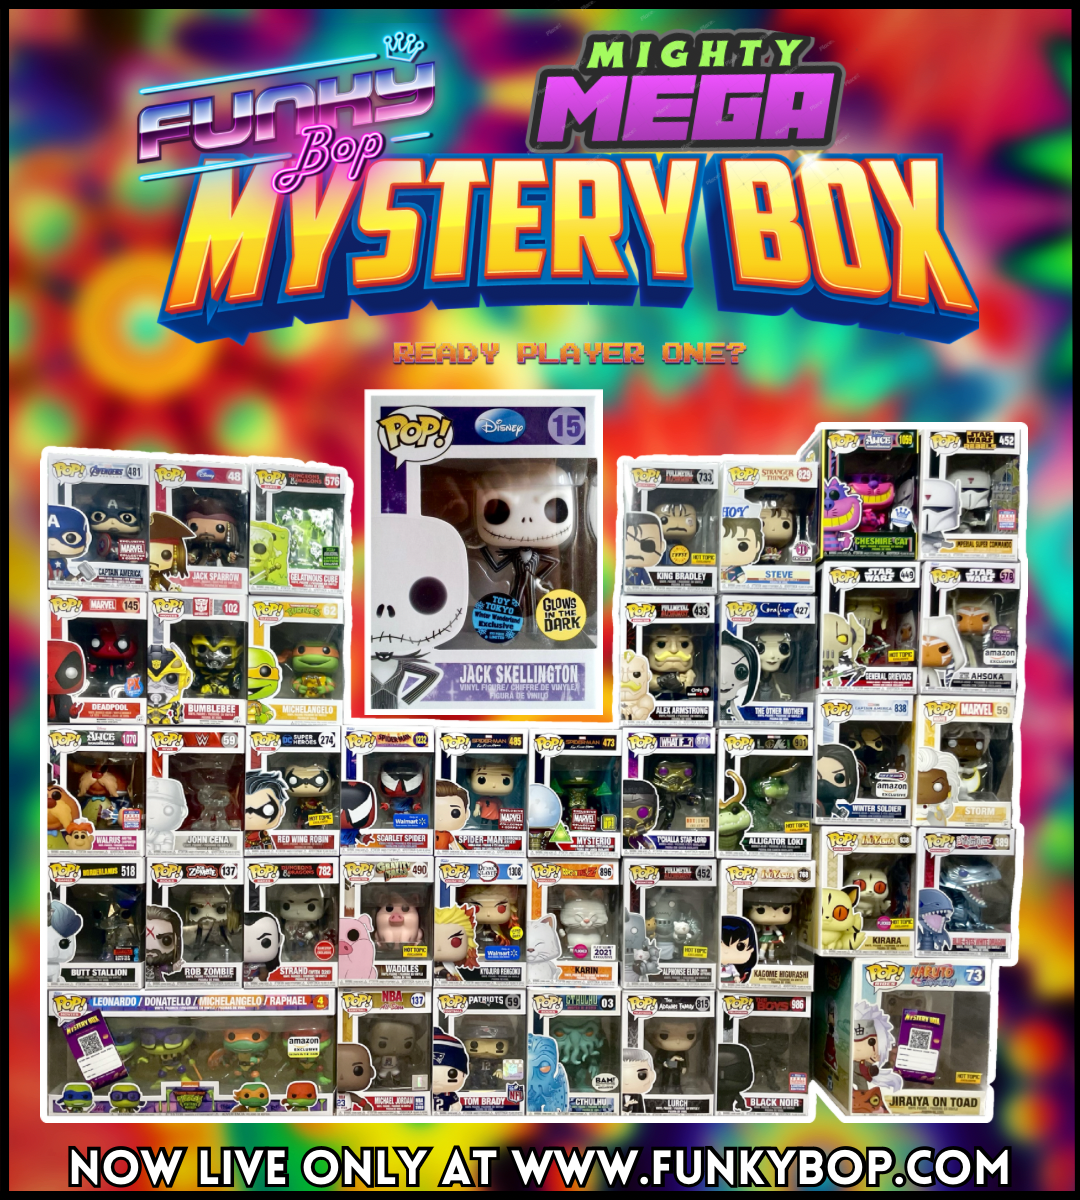 Funky Bop MIGHTY MEGA Mystery Box - 8.11